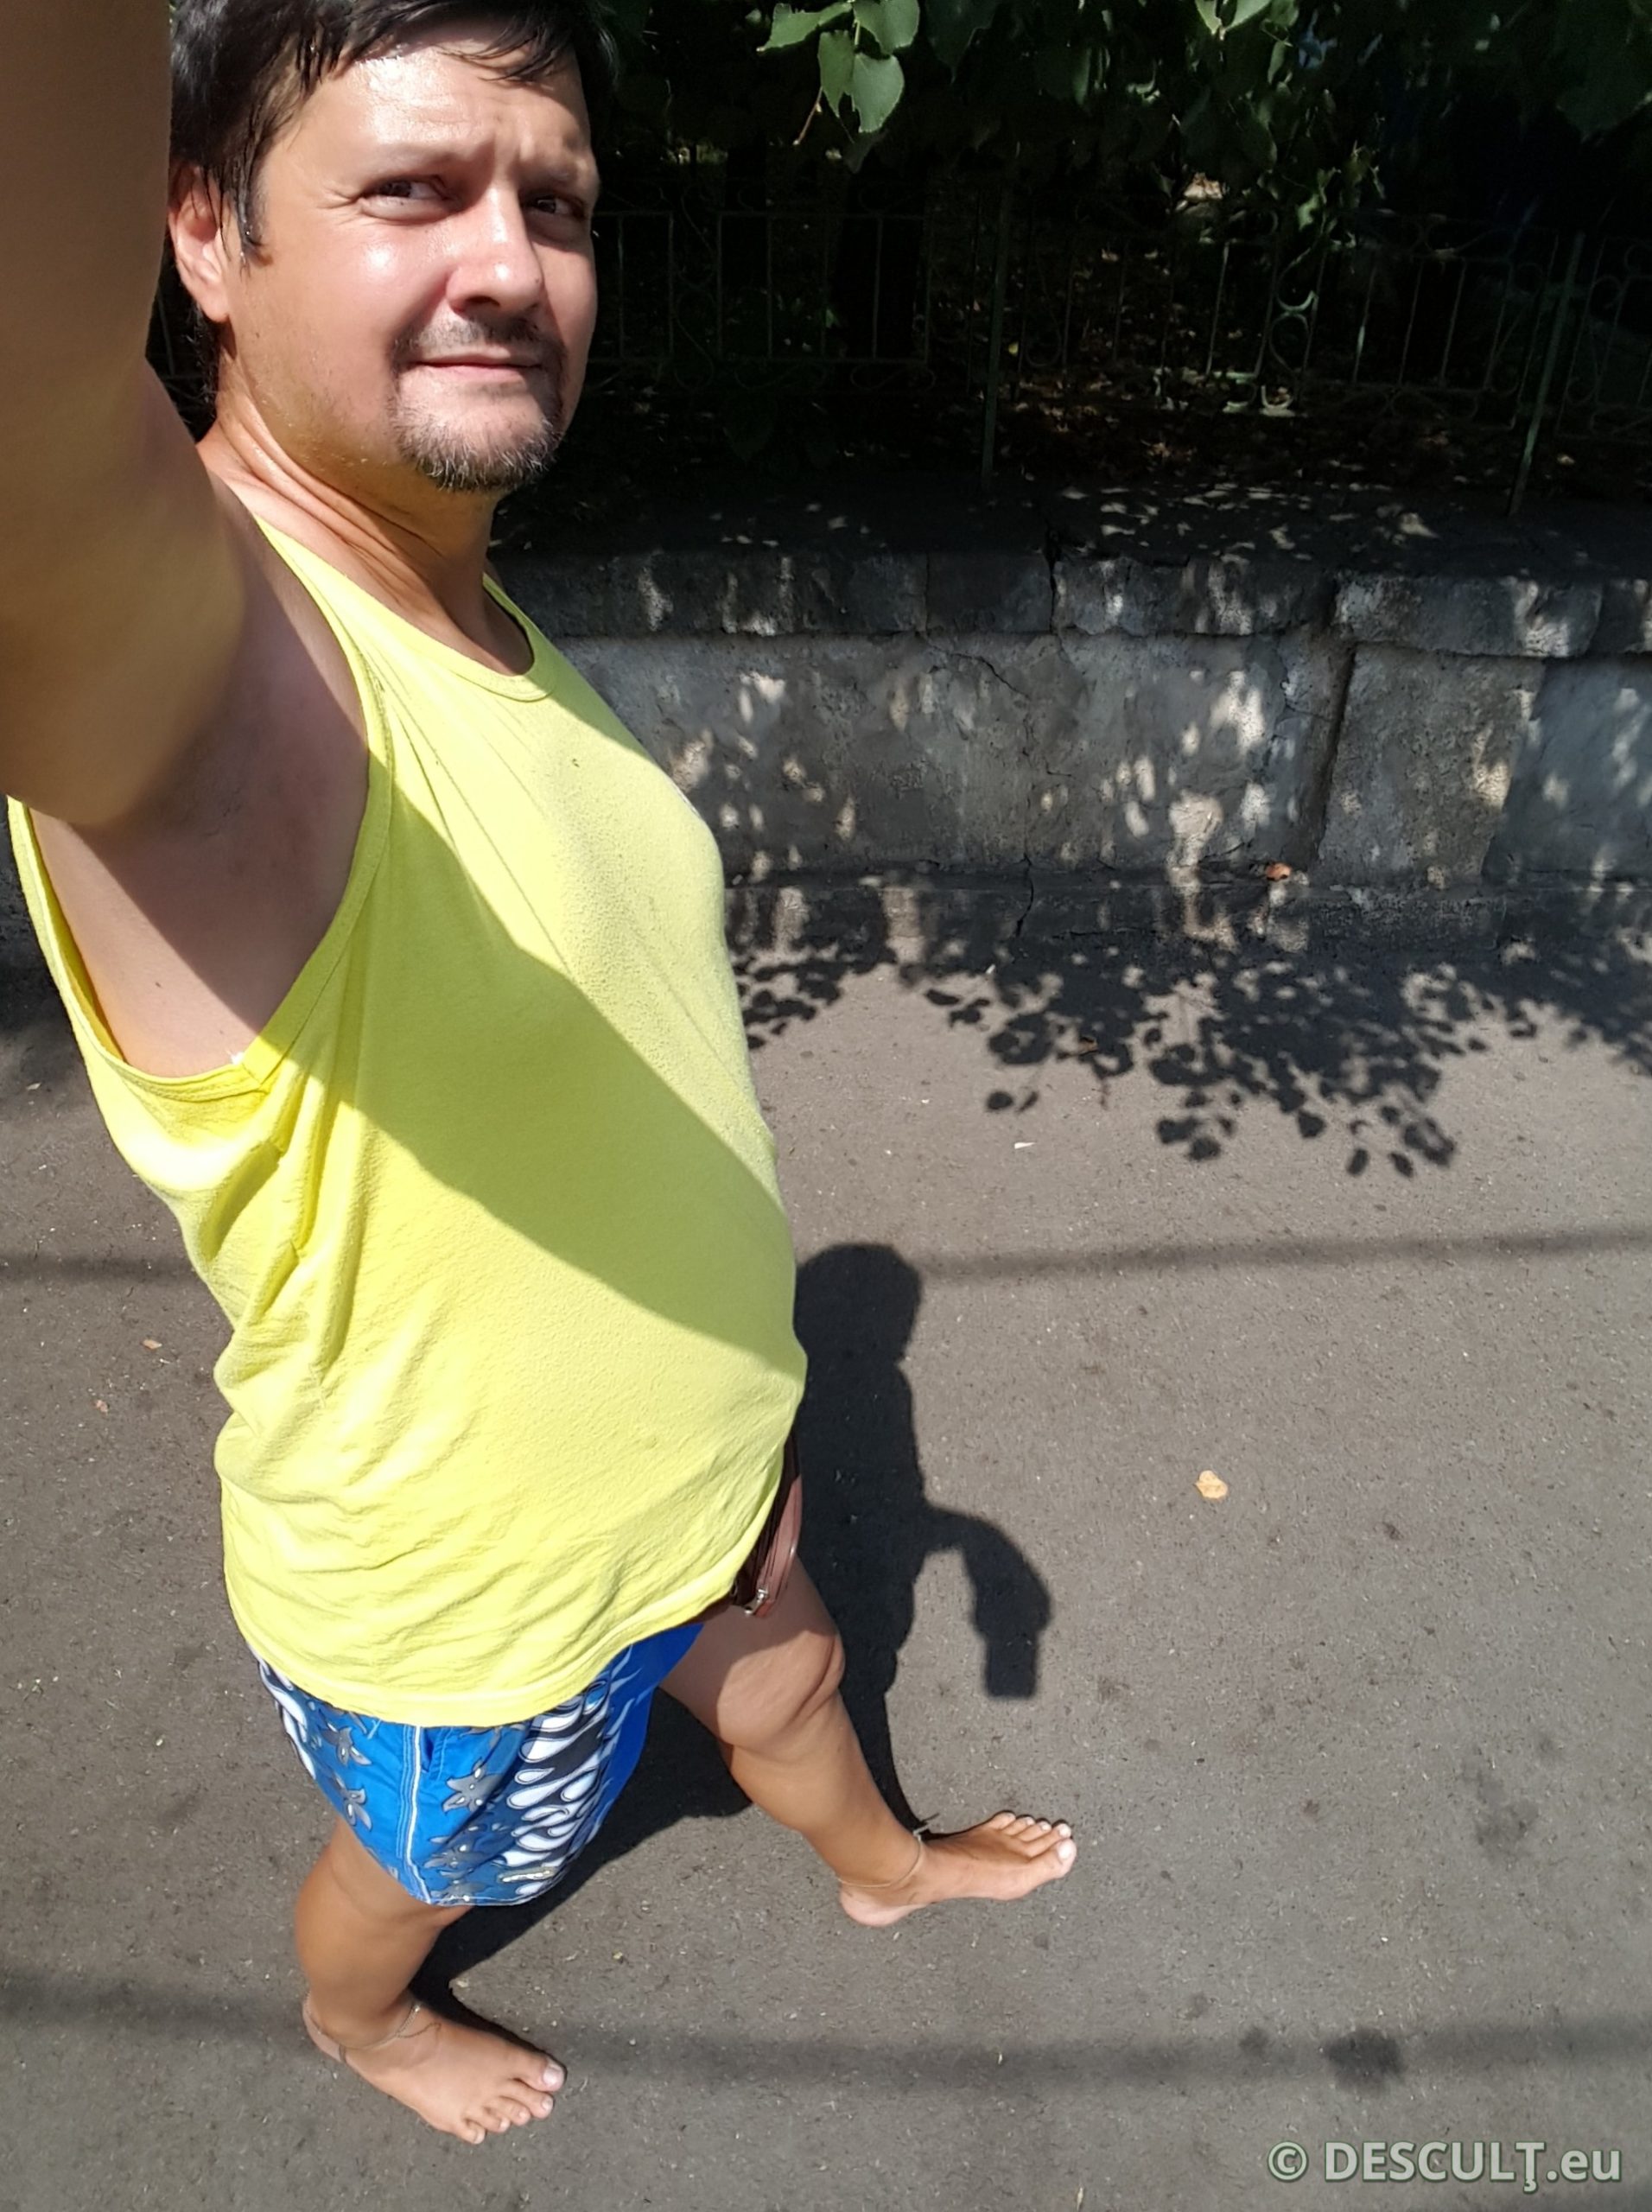 Ce cred românii dacă mergi desculţ? – 04 selfie desculţ pe stradă